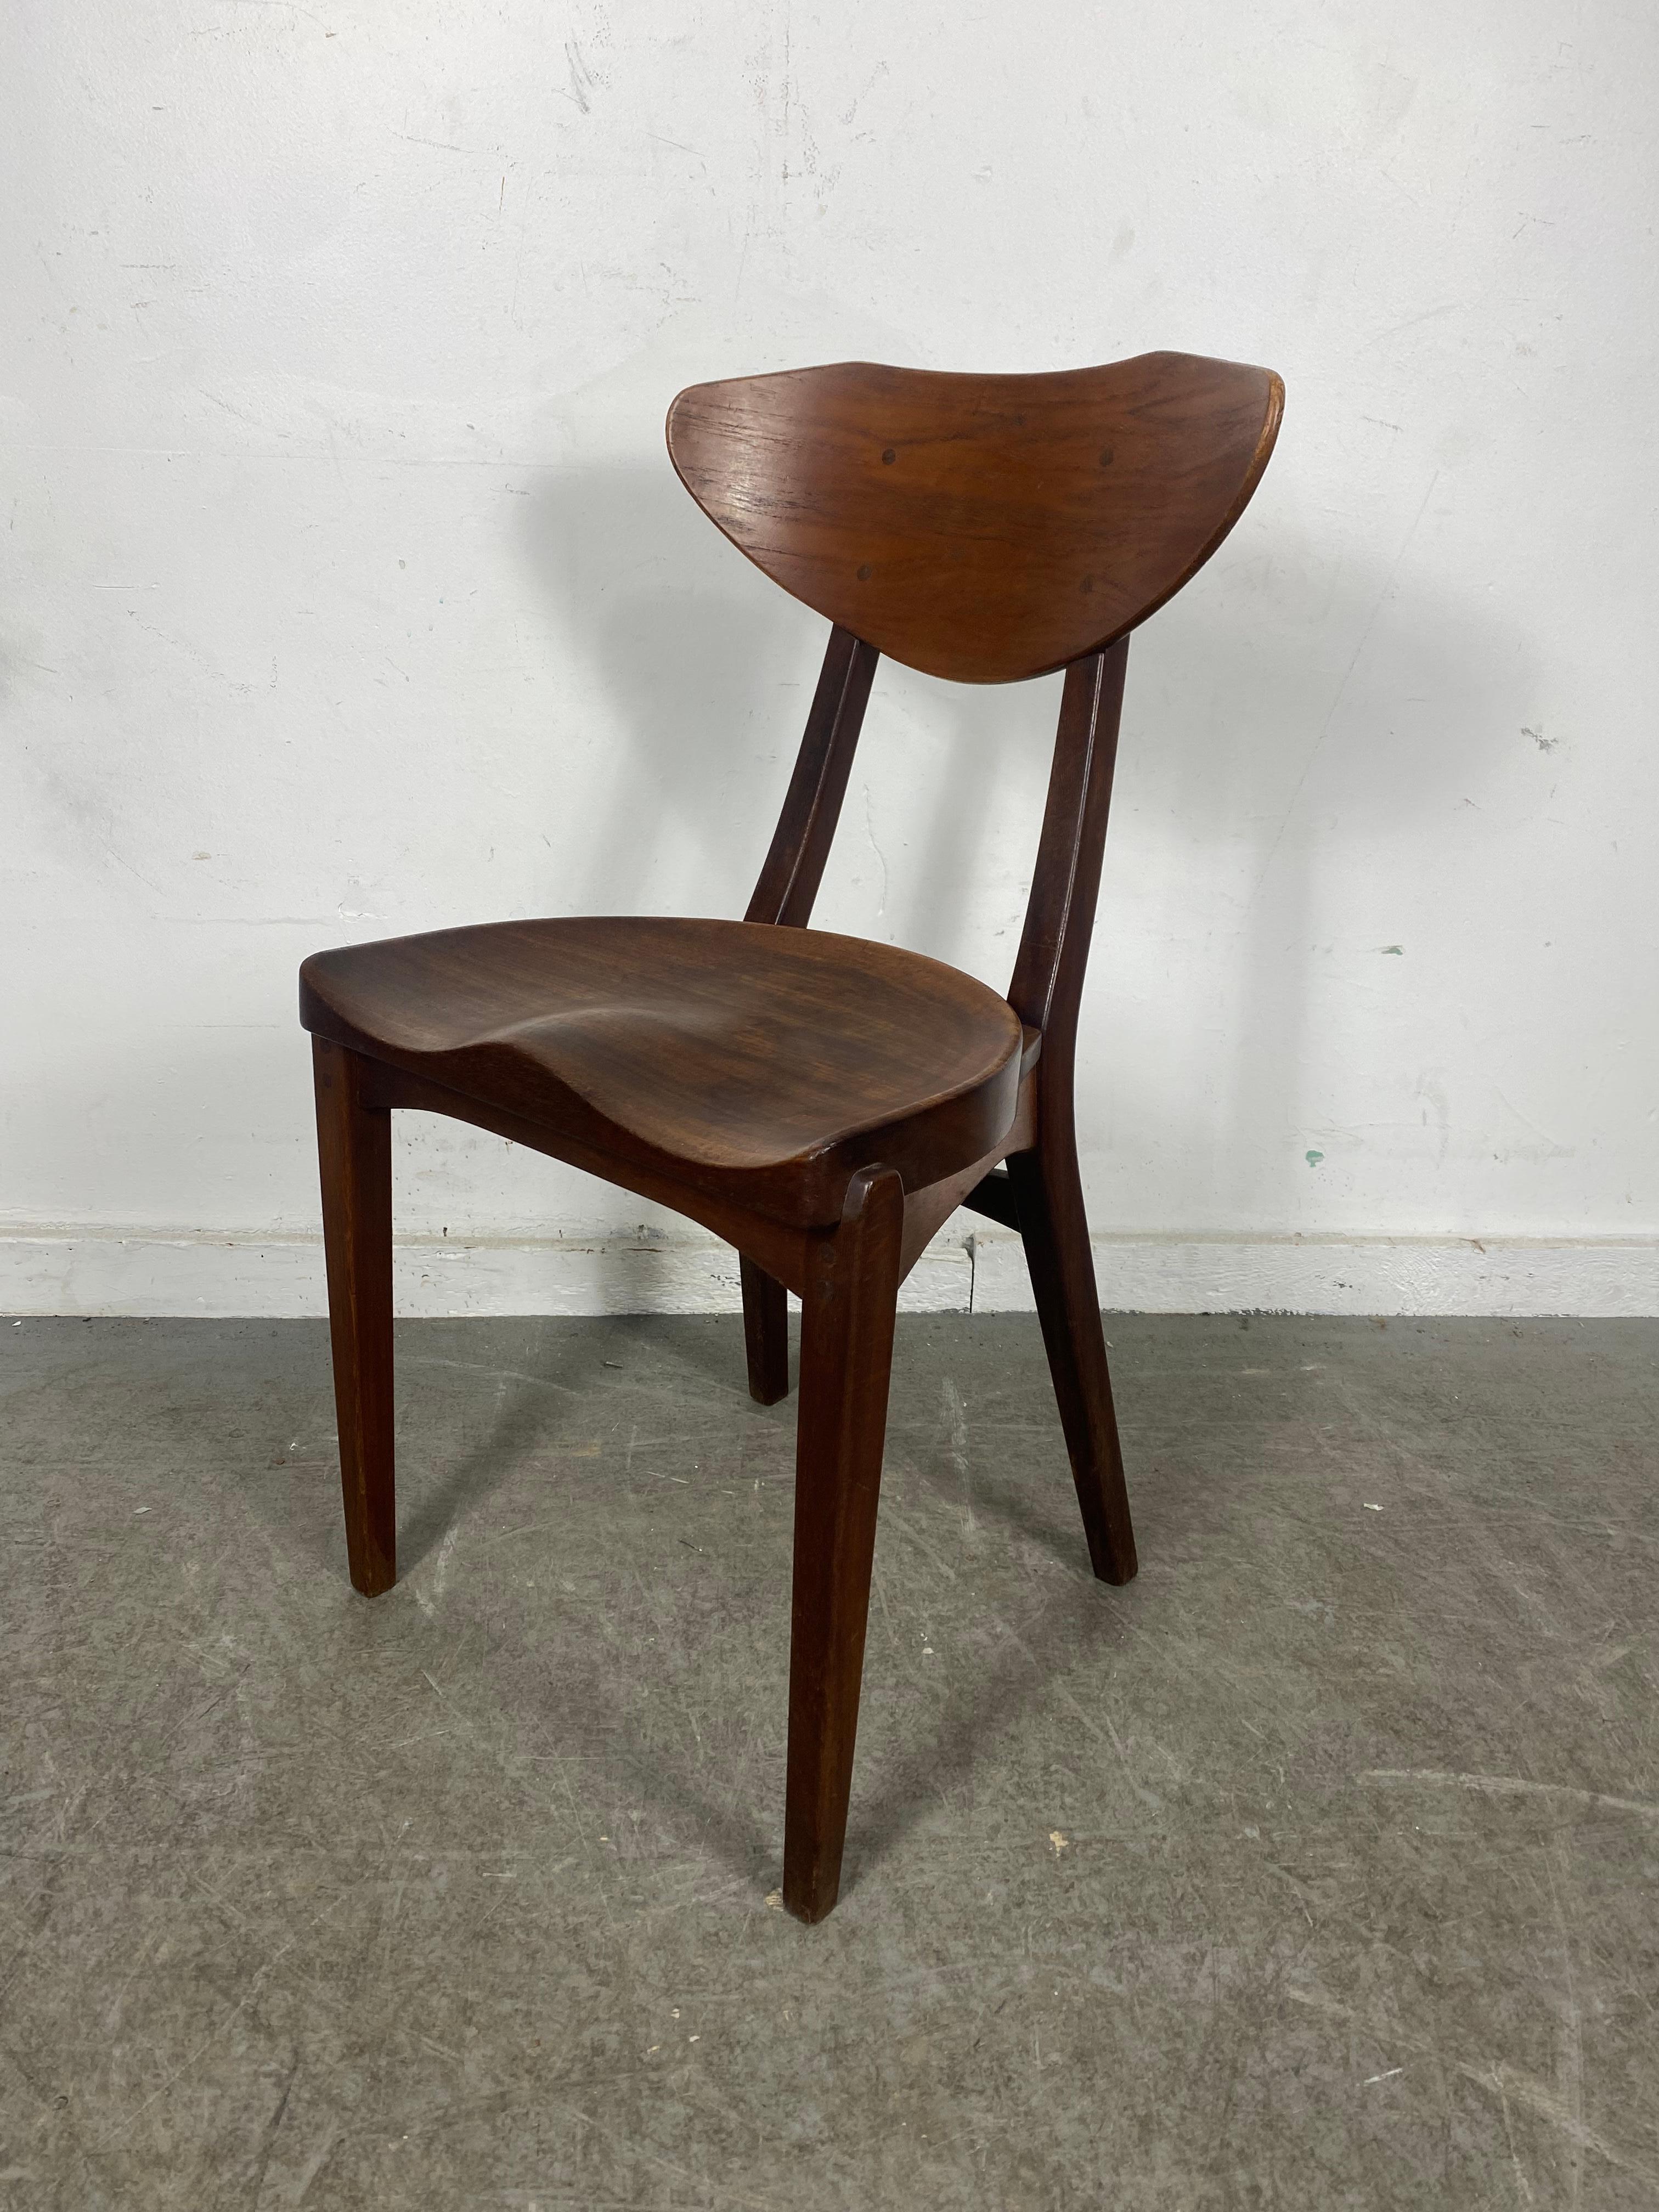 Modernist Sculptural Chair Designed by Richard Jensen and Kjaerulff Rasmusse 5